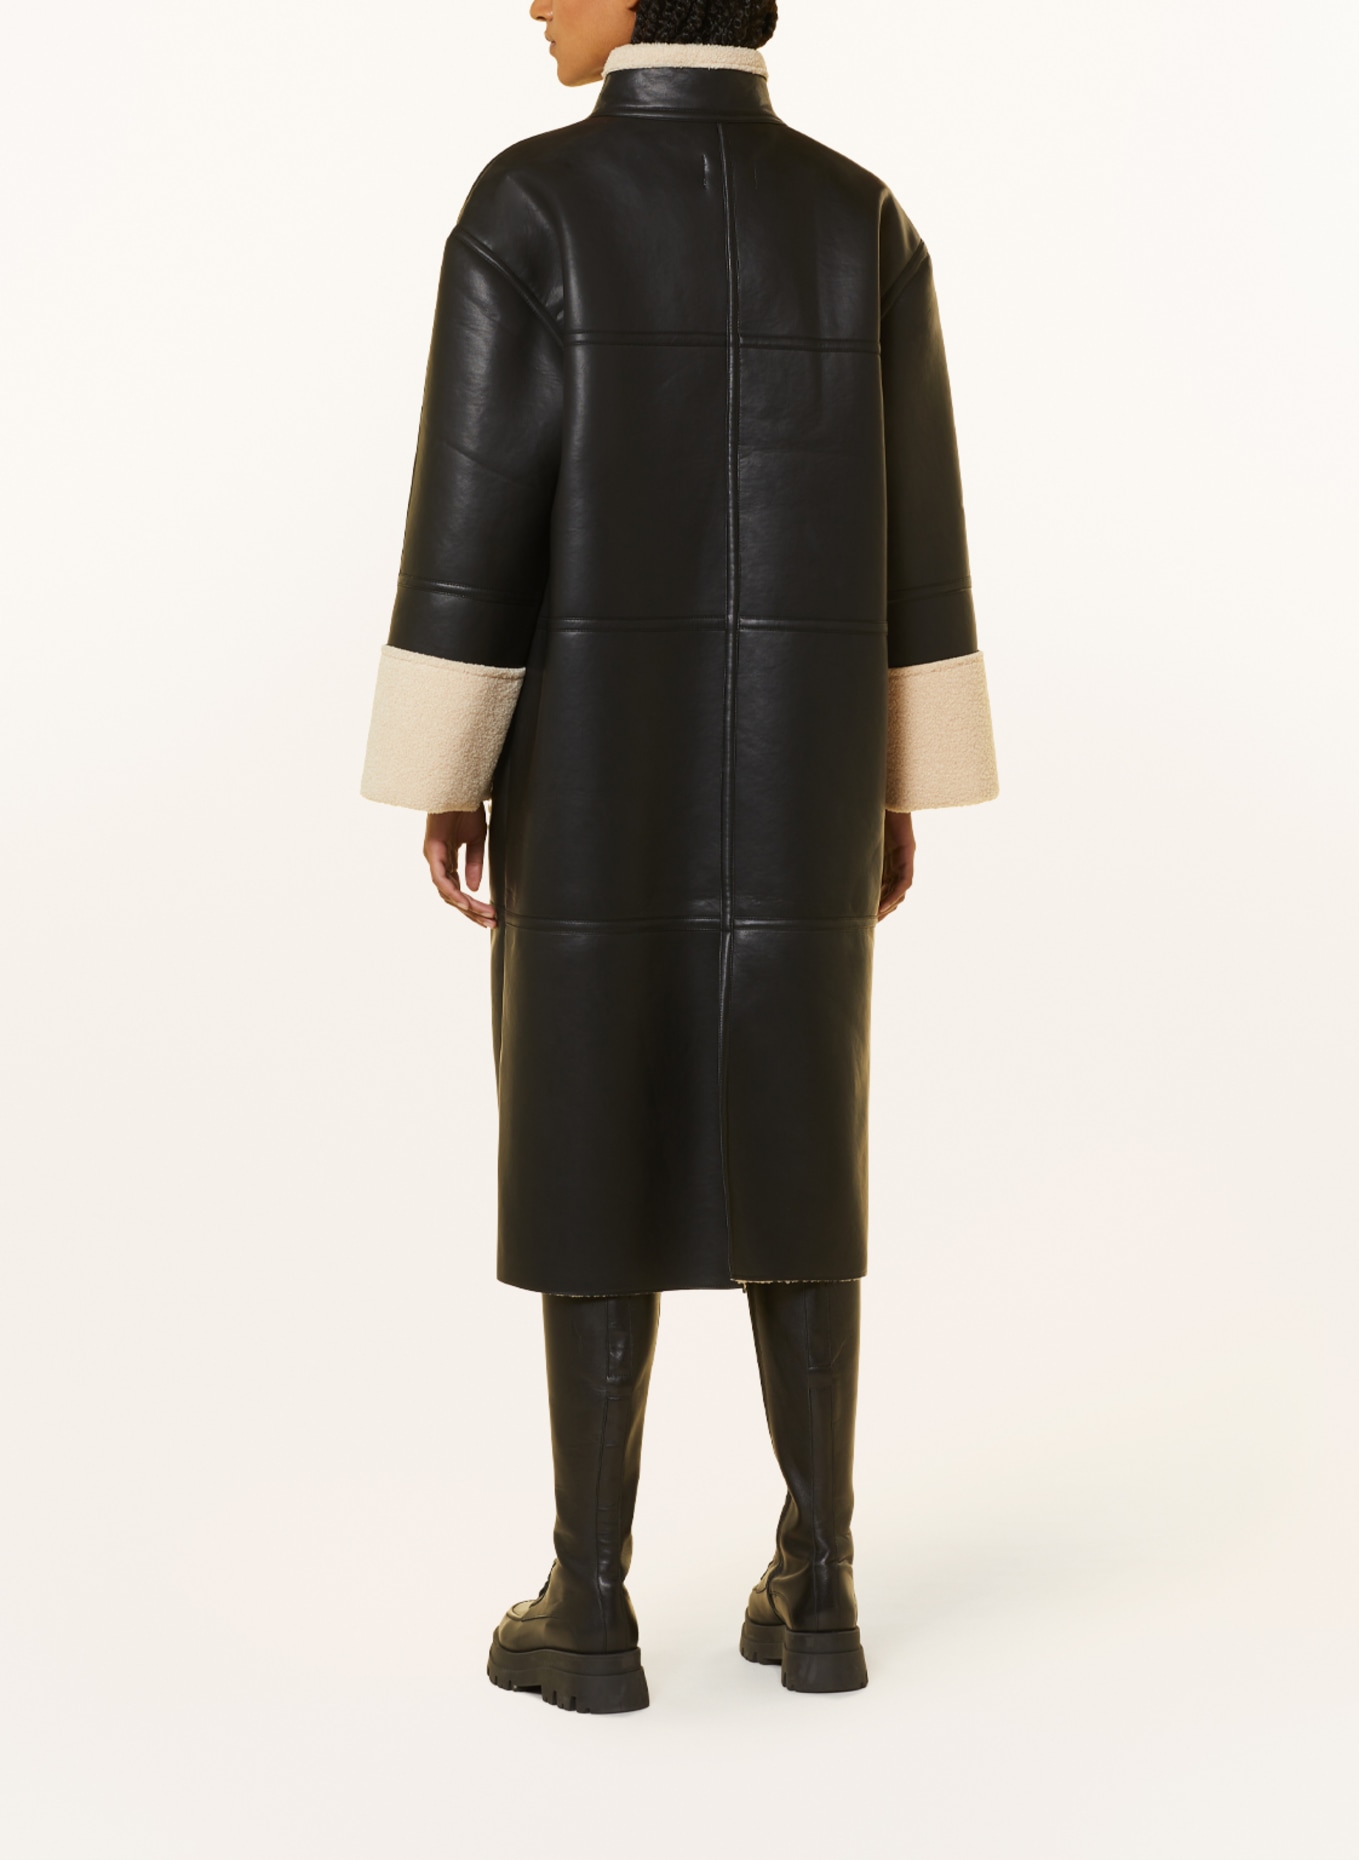 MSCH COPENHAGEN Coat MSCHDELICIA in leather look with faux fur, Color: BLACK (Image 3)